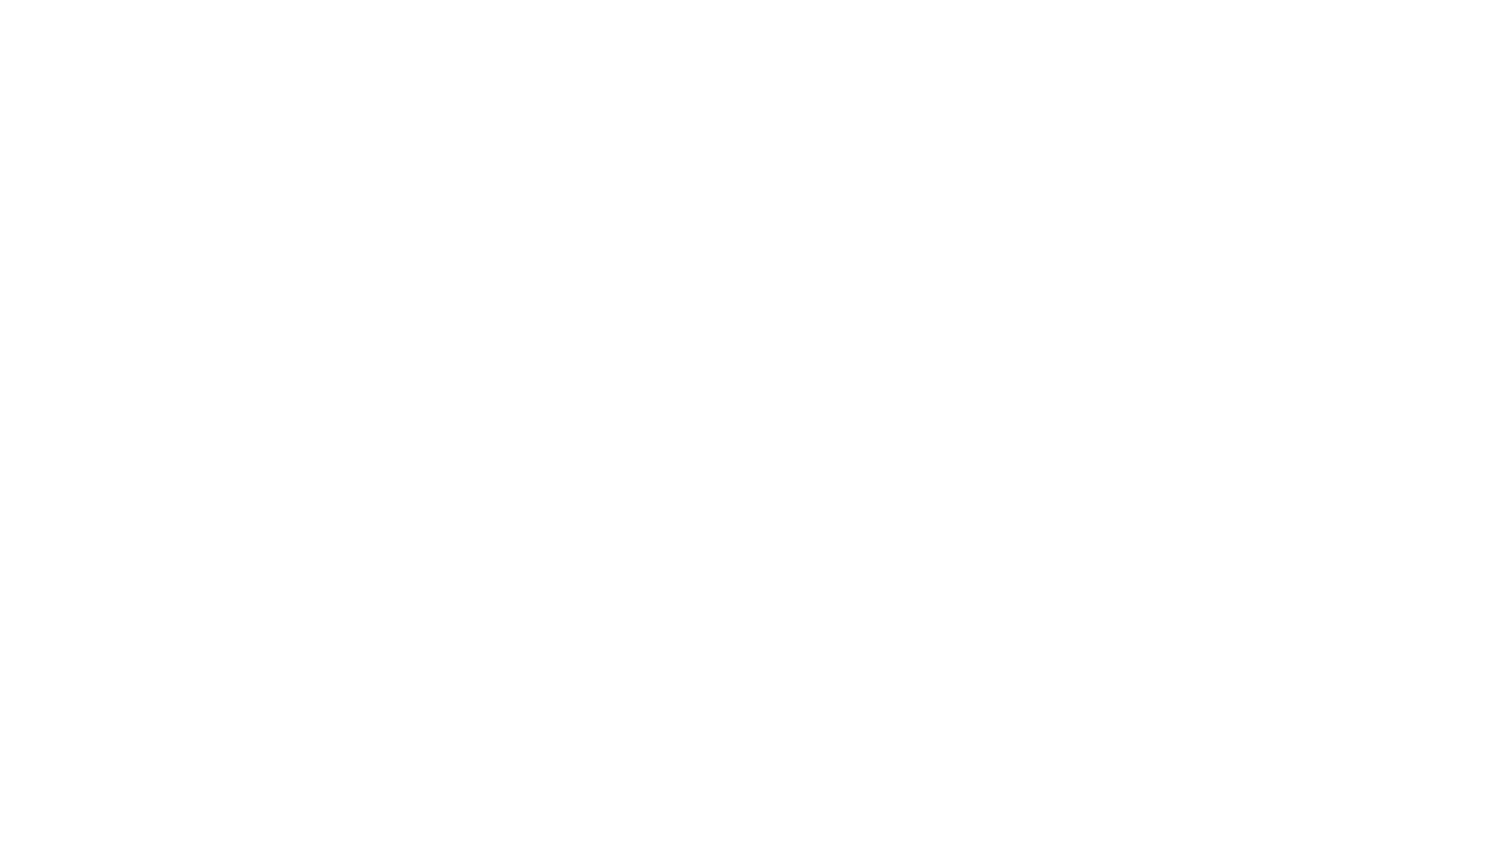 Wax Merchant